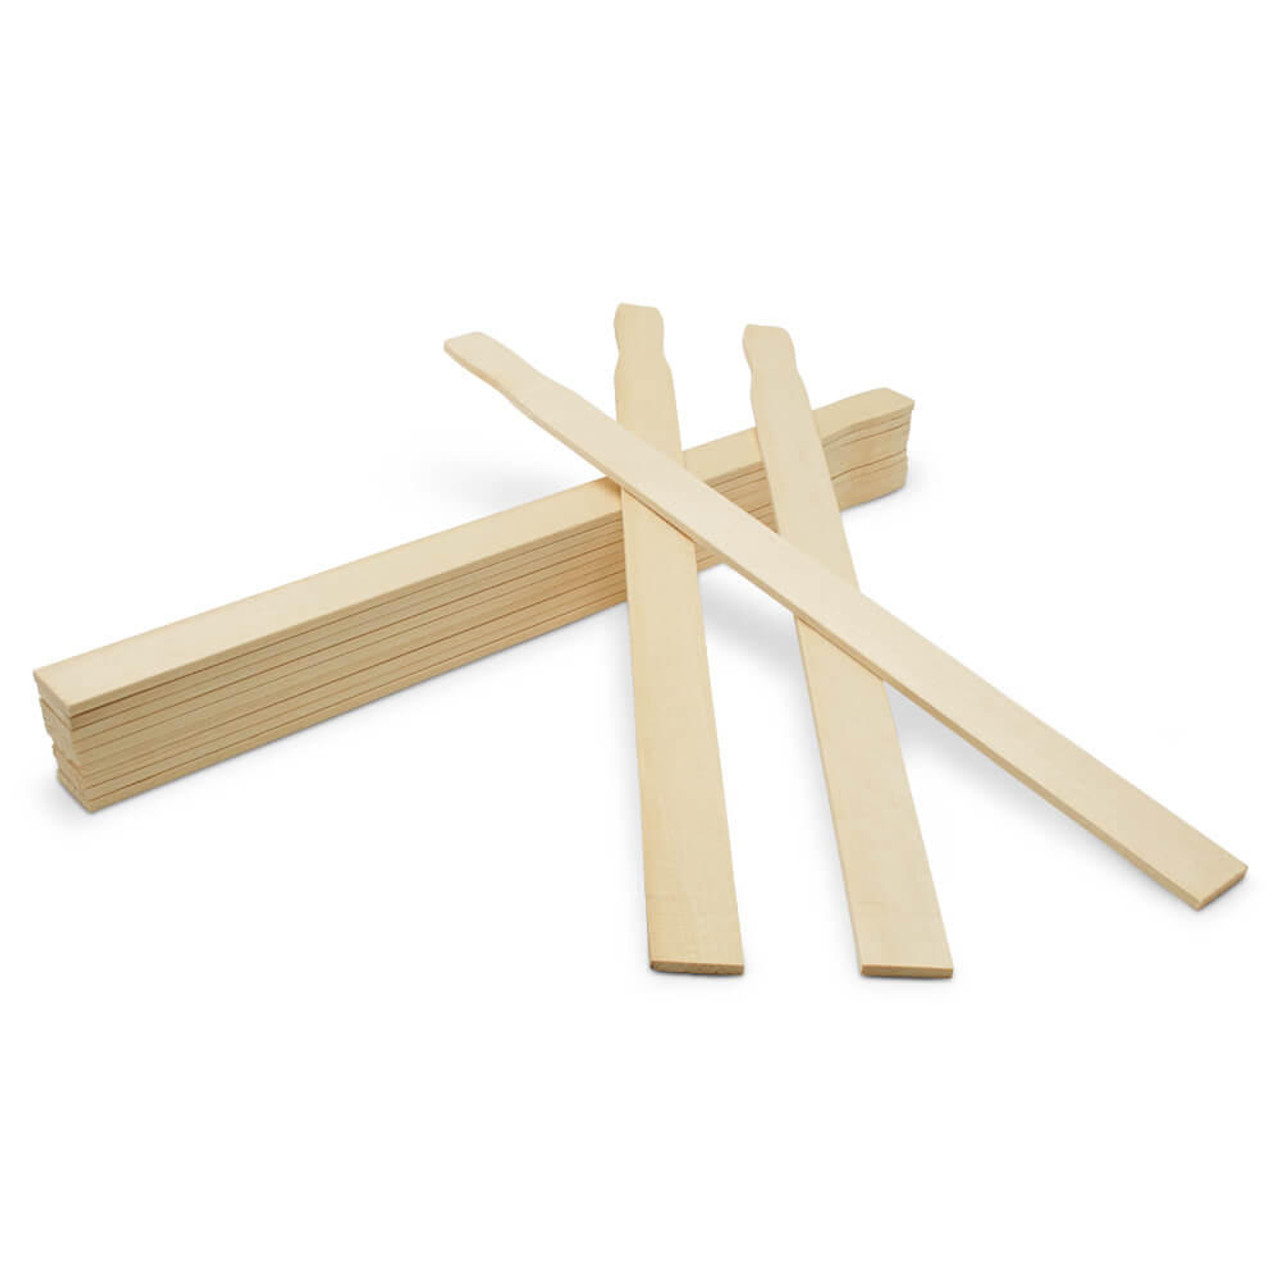 Wooden Paint Sticks 21”, Craft Sticks